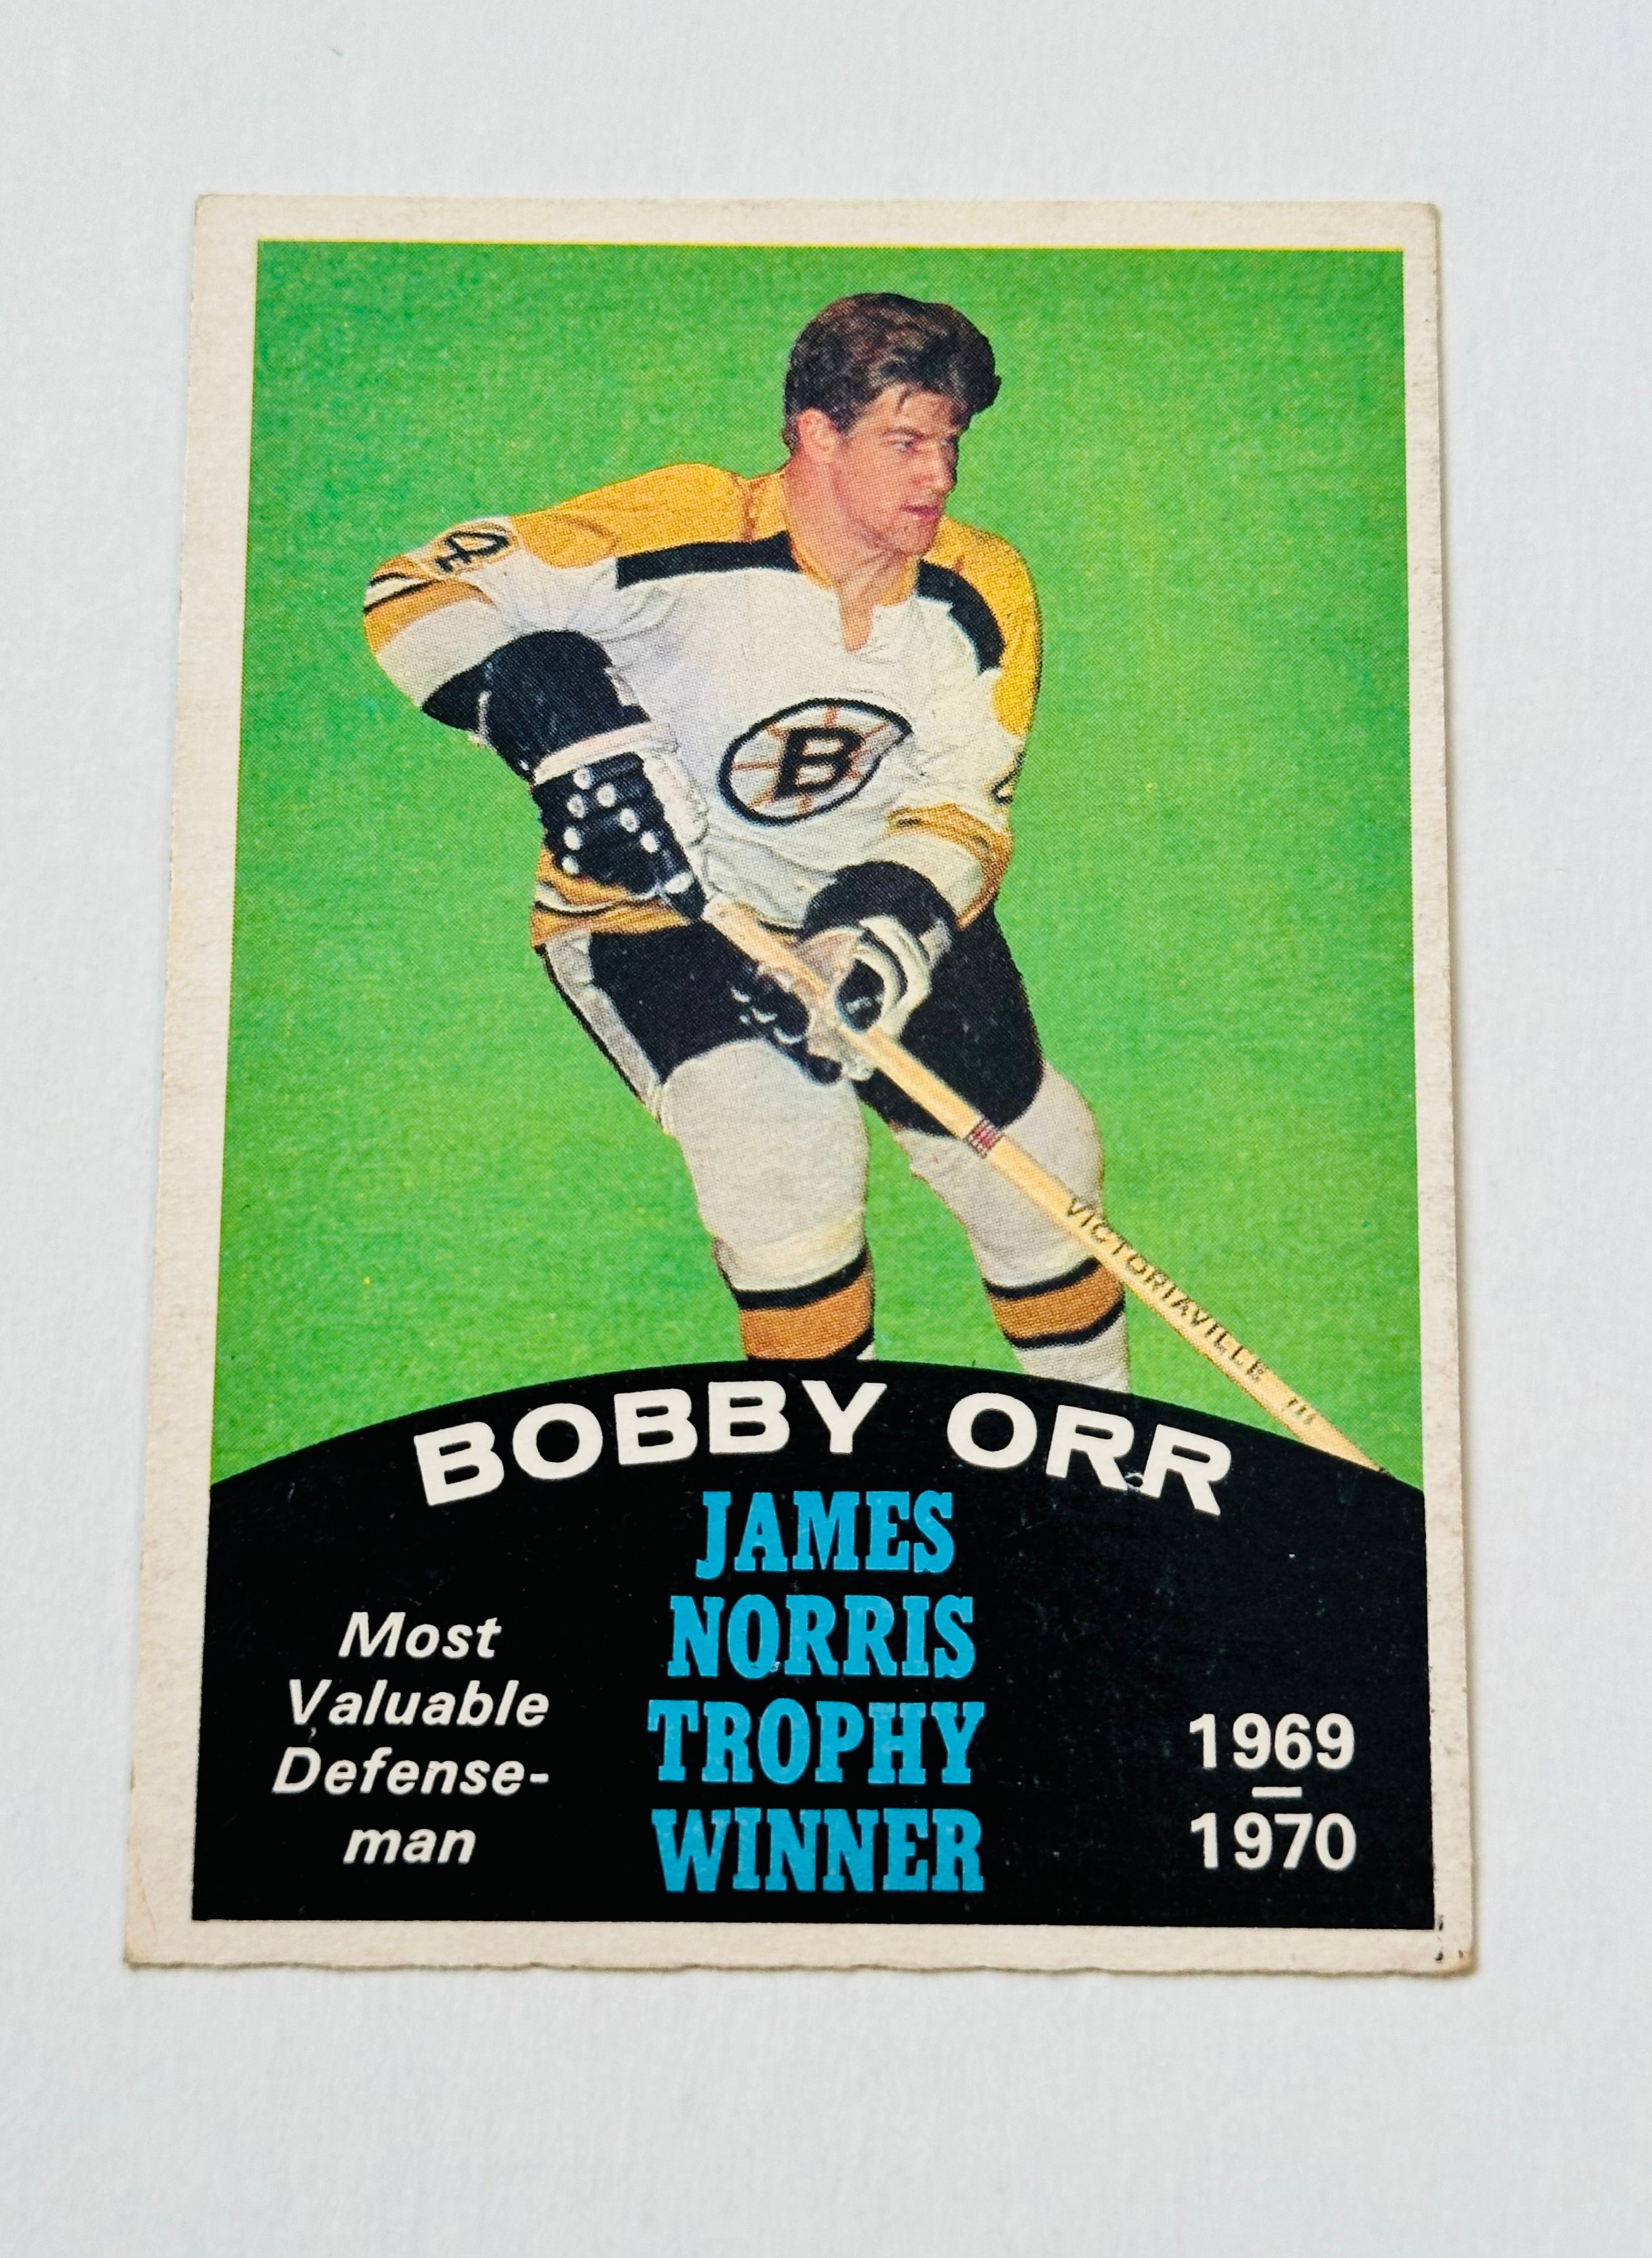 Bobby Orr James Norris Trophy winner opc hockey card 1970-71